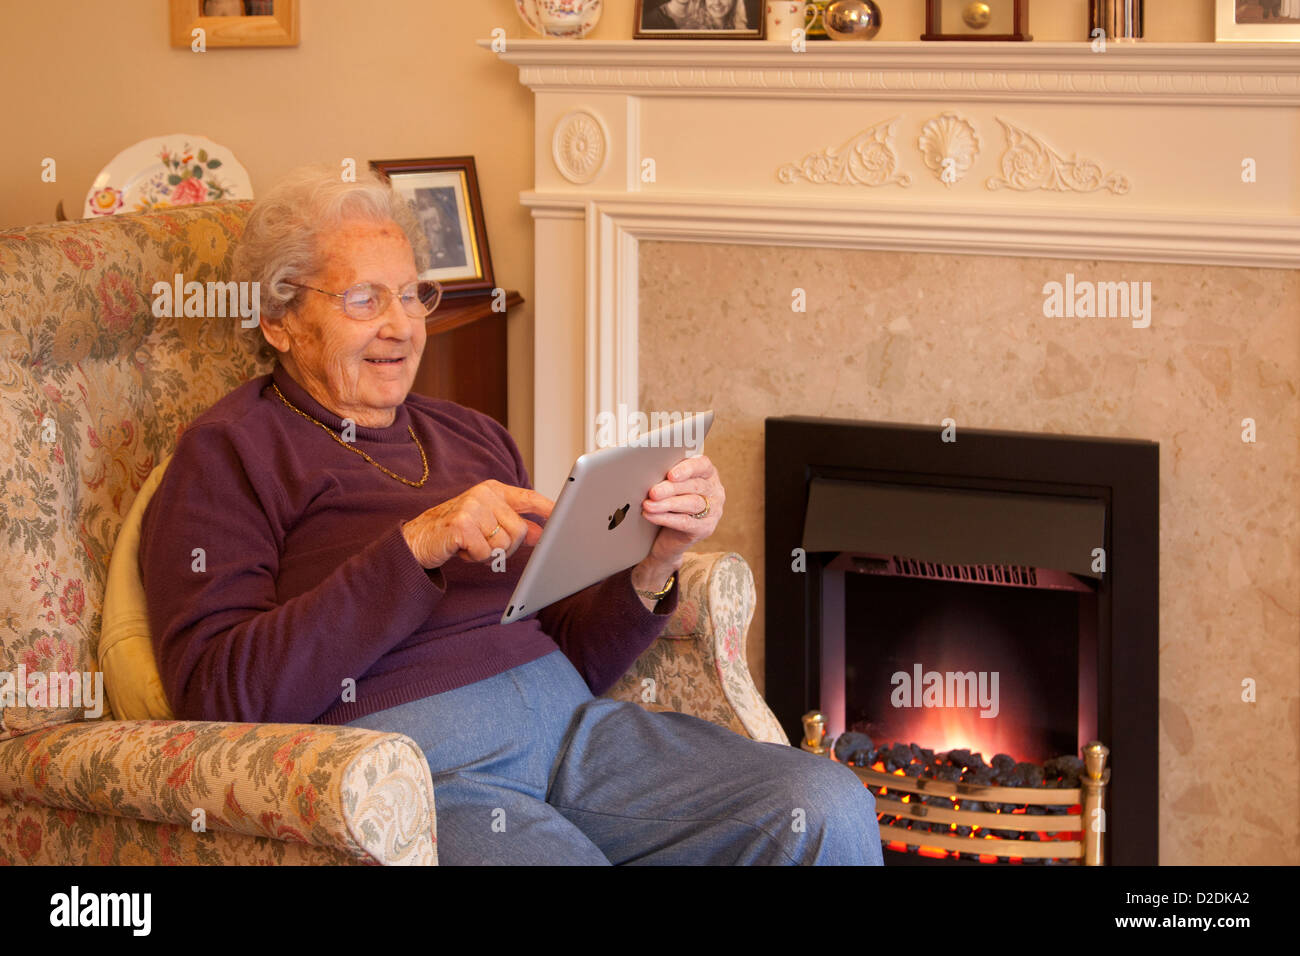 Femme âgée pensionné avec lunettes sur apple ipad tablet relaxing on président playing computer game Banque D'Images